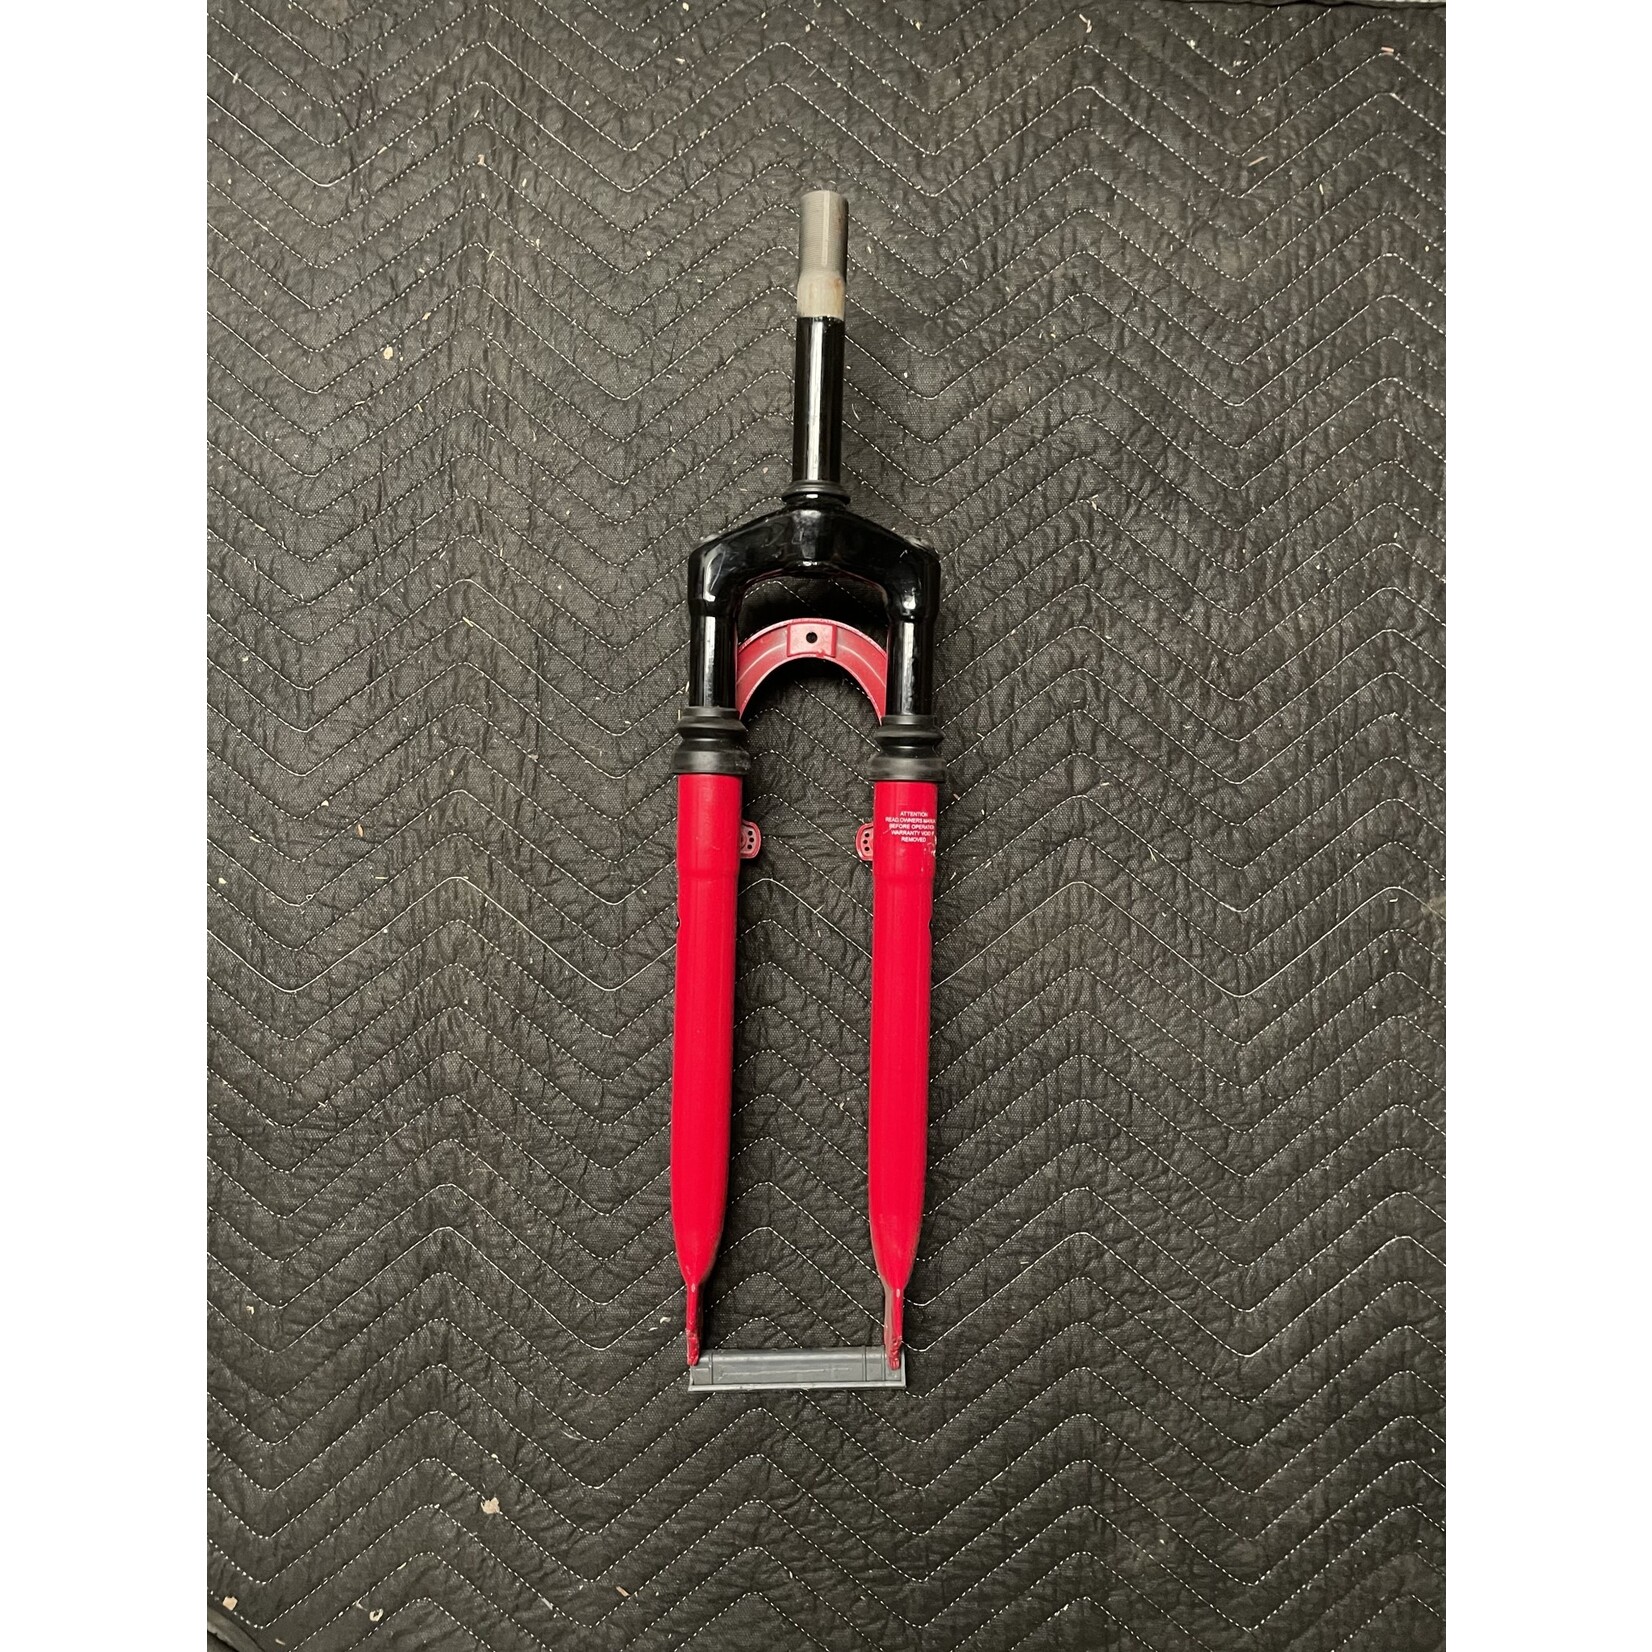 Vitesse 1” x 6” Threaded 27.5” Suspension Fork (Red & Black)